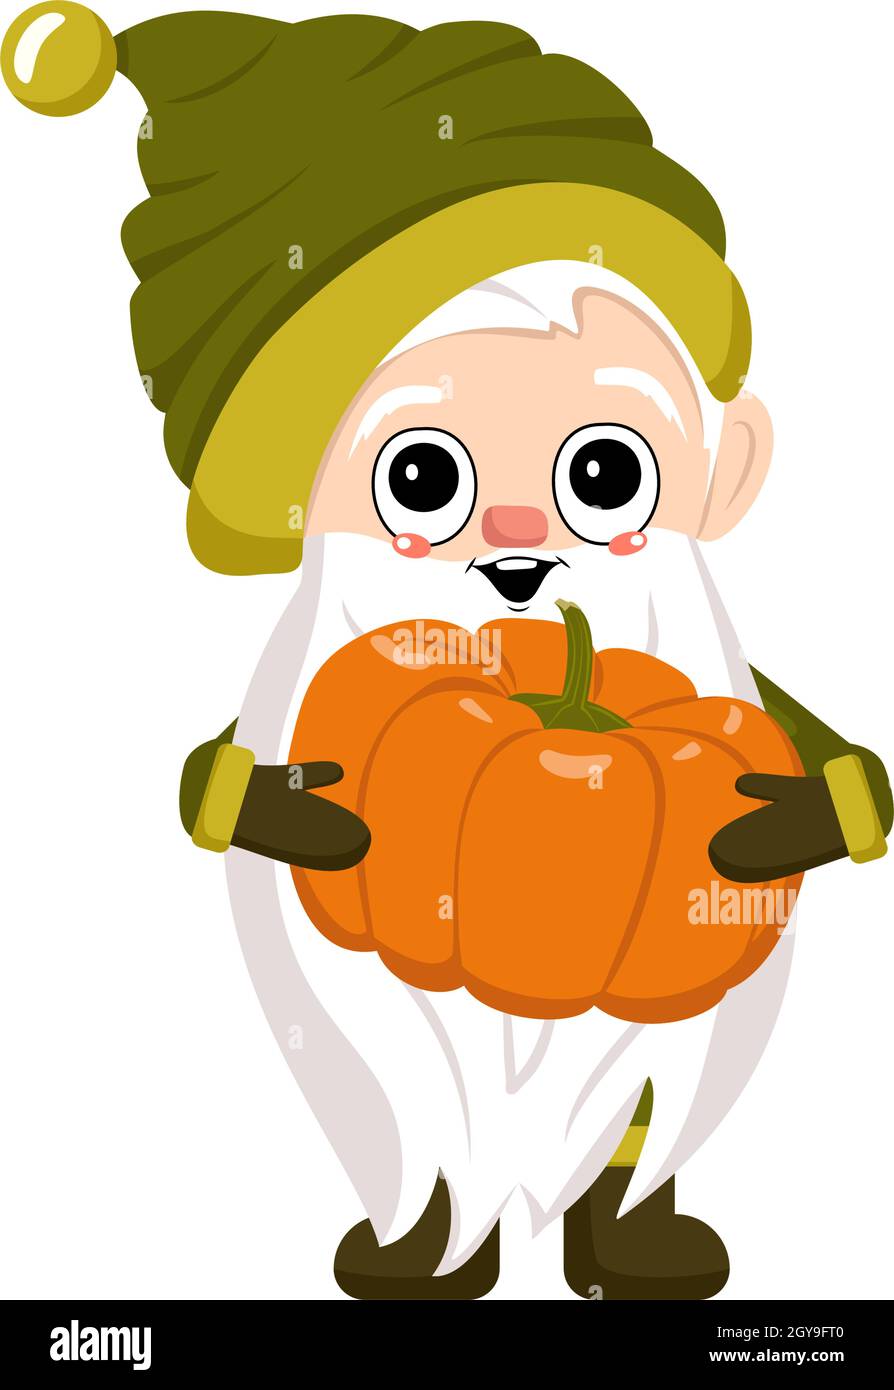 Piccolo gnomo con barba lunga bianca, viso allegro e zucca. Personaggio per festa del raccolto, decorare casa e giardino Illustrazione Vettoriale